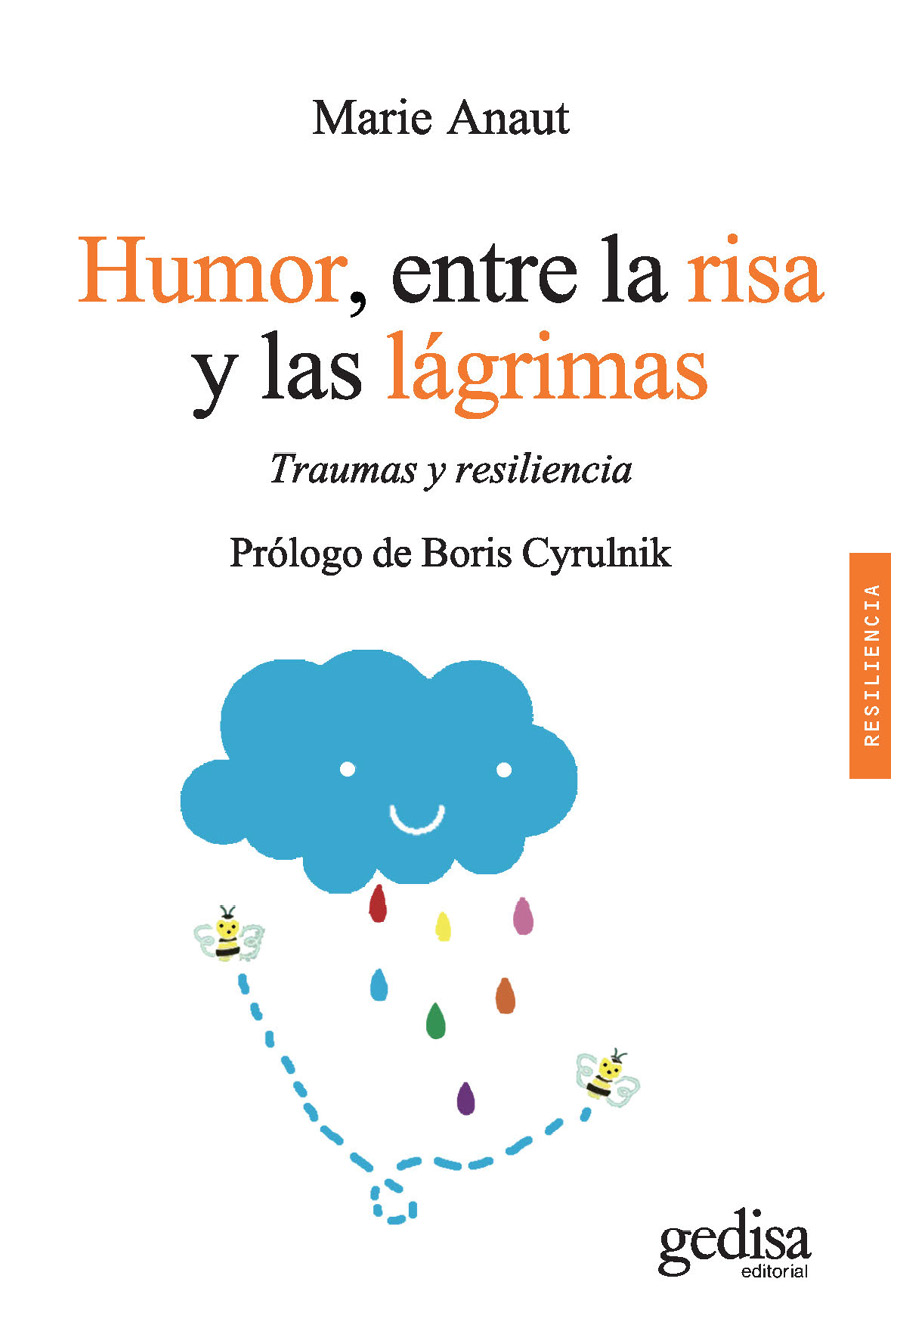 Marie Anaut Humor entre la risa y las lágrimas Colección Psicología - photo 2